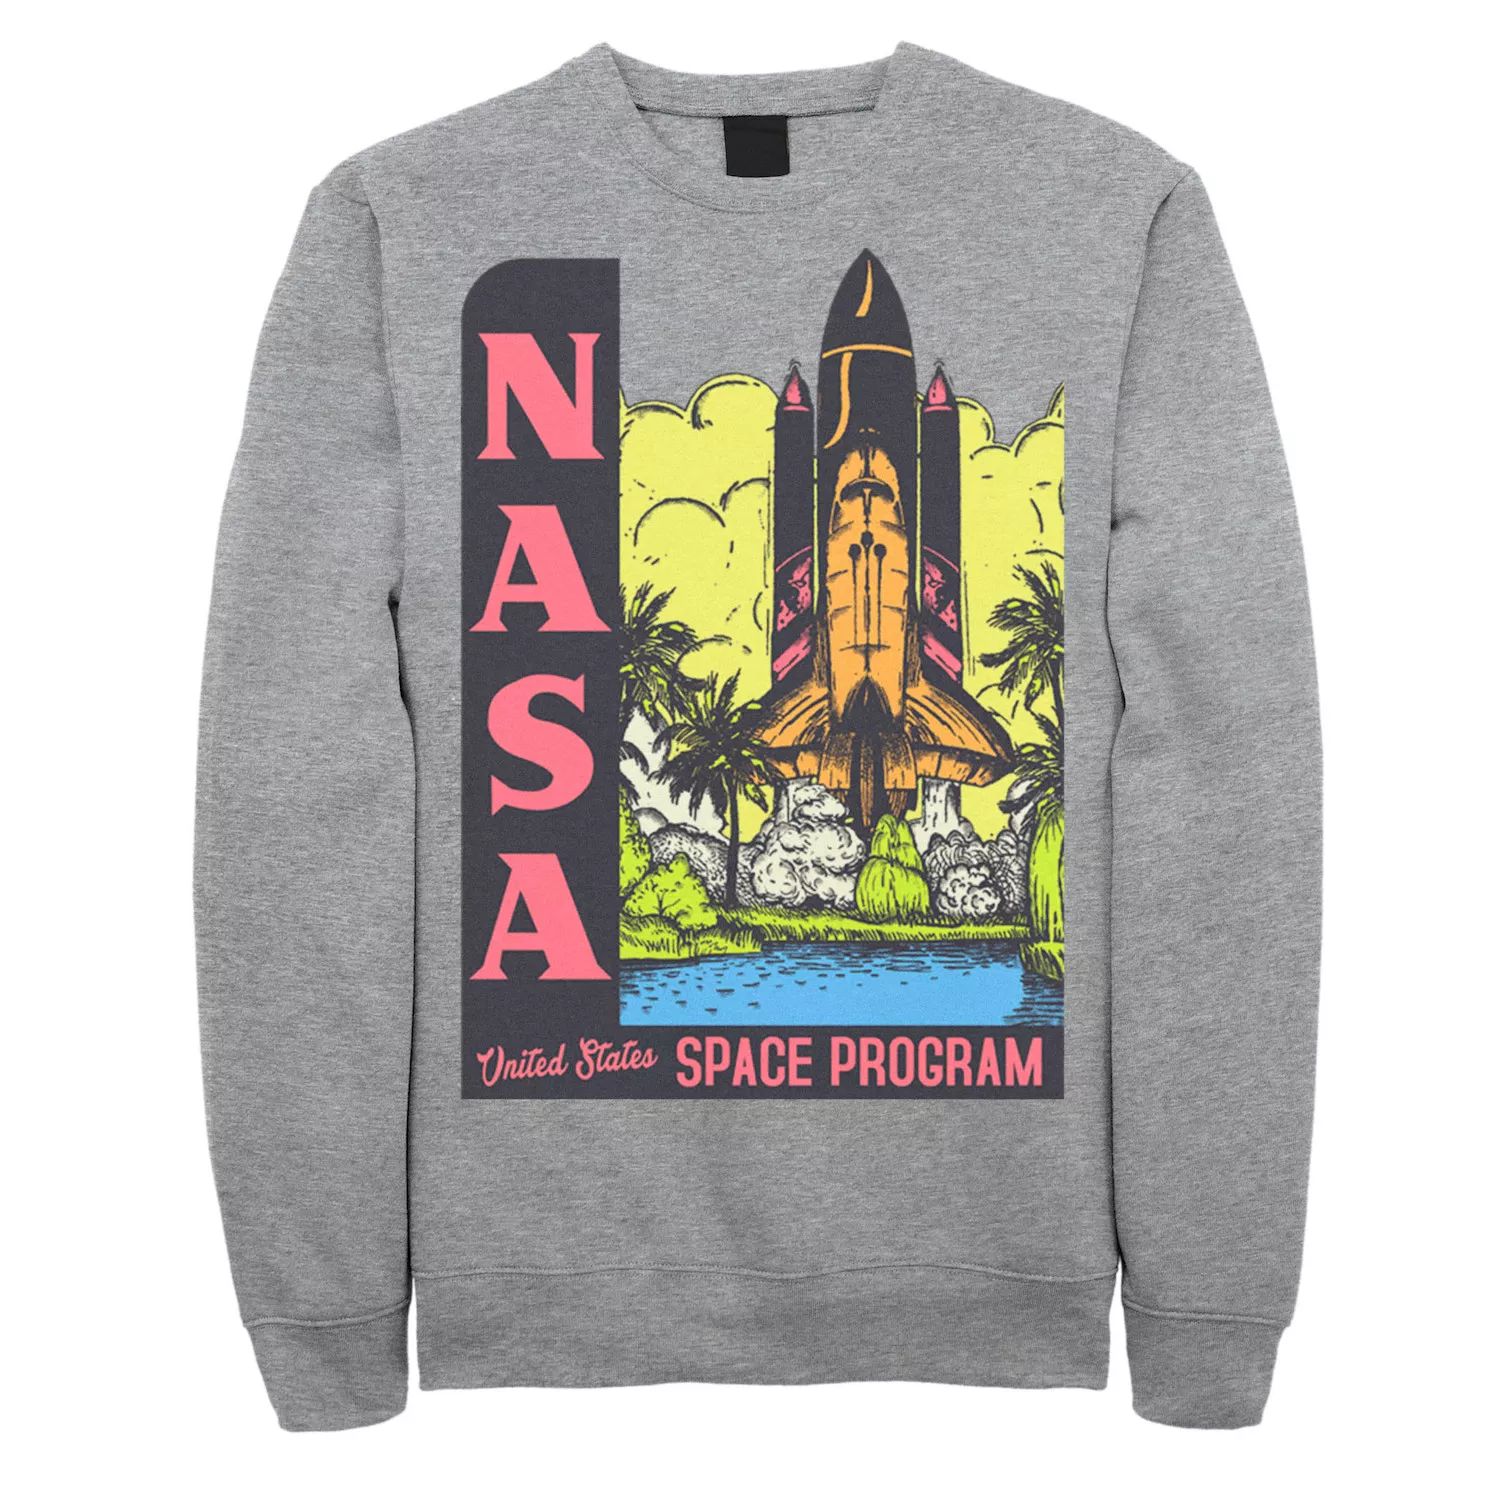 Мужской винтажный свитшот с плакатом космической программы НАСА Licensed Character